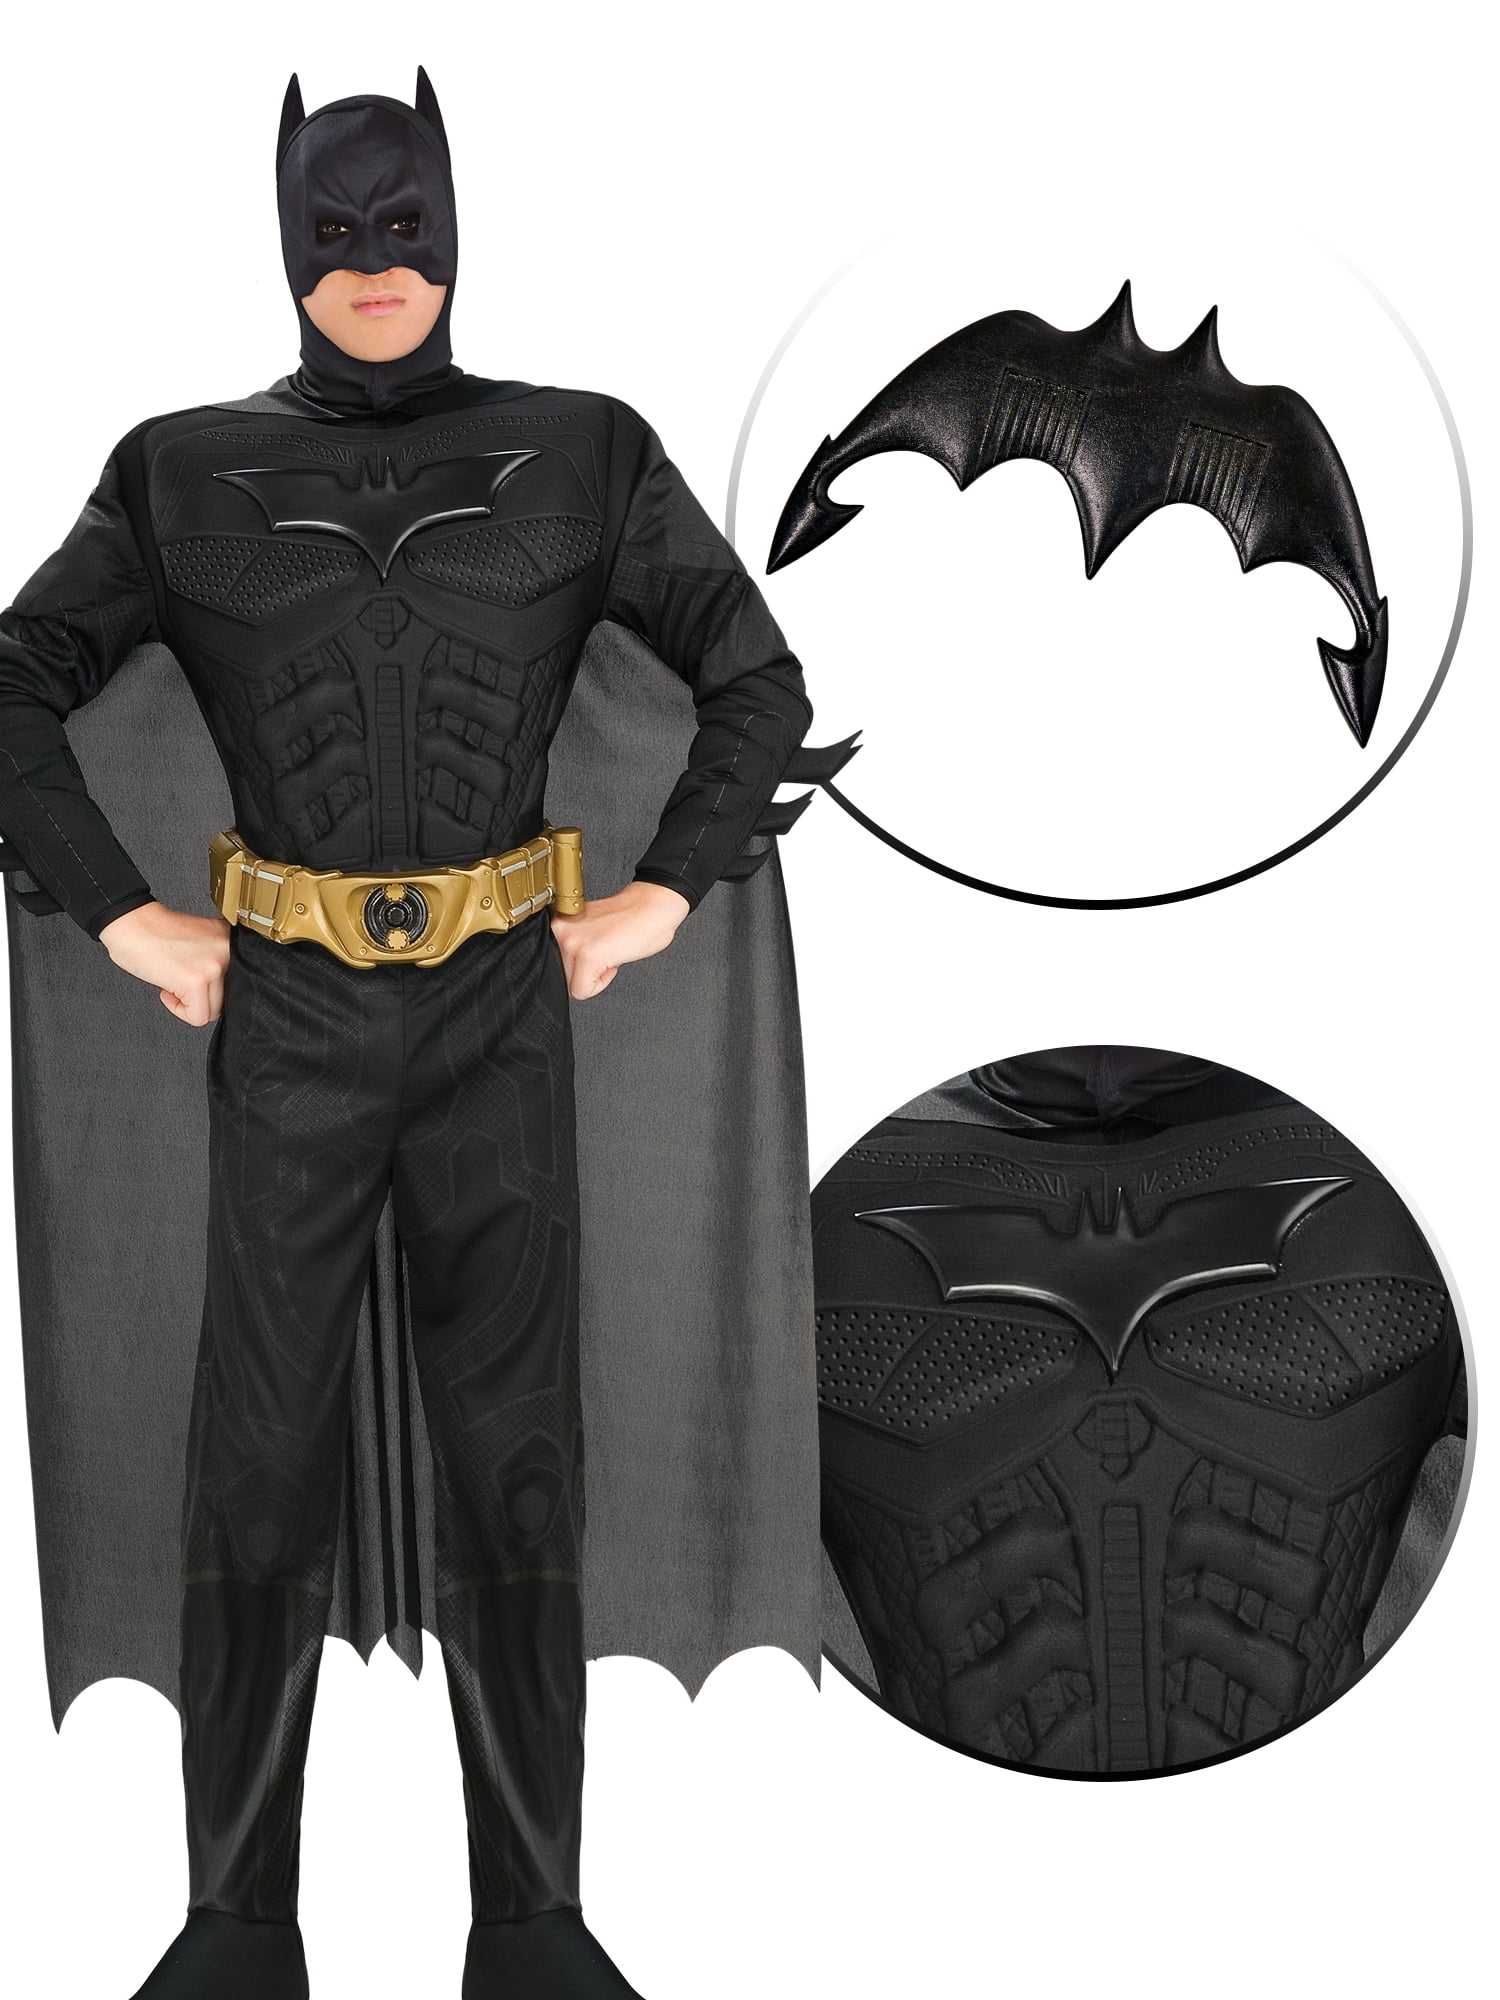 Rubie's The Batman: Boy's Deluxe Batman Costume Medium